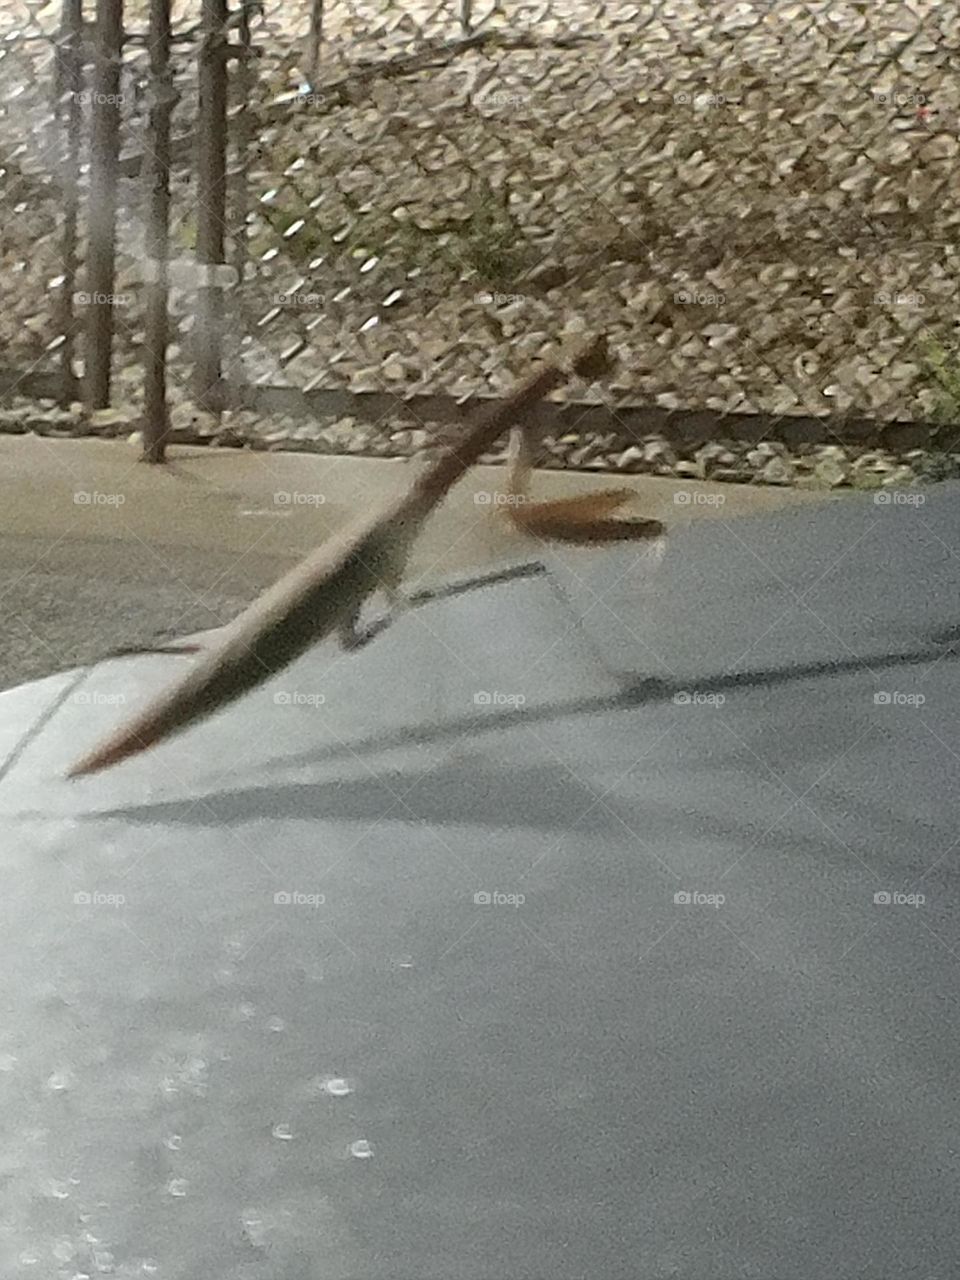 Praying Mantis on my car